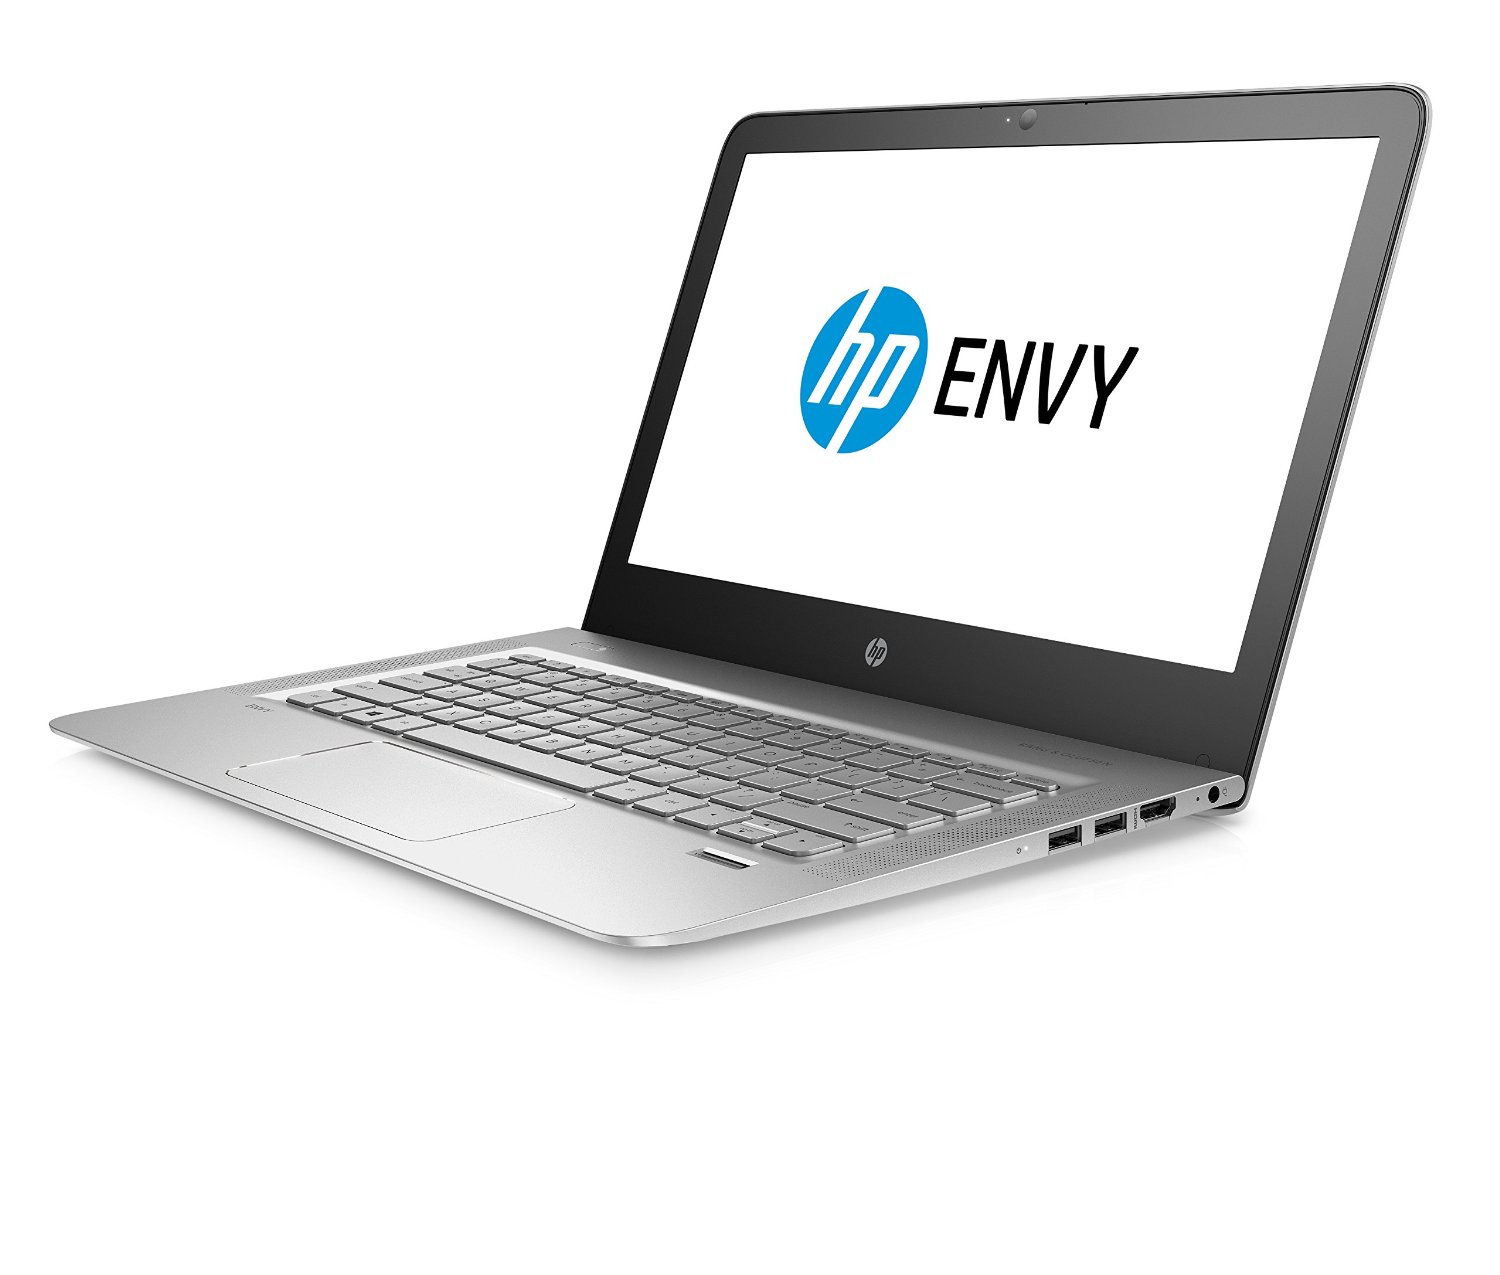 HP Envy 13-ab003nf